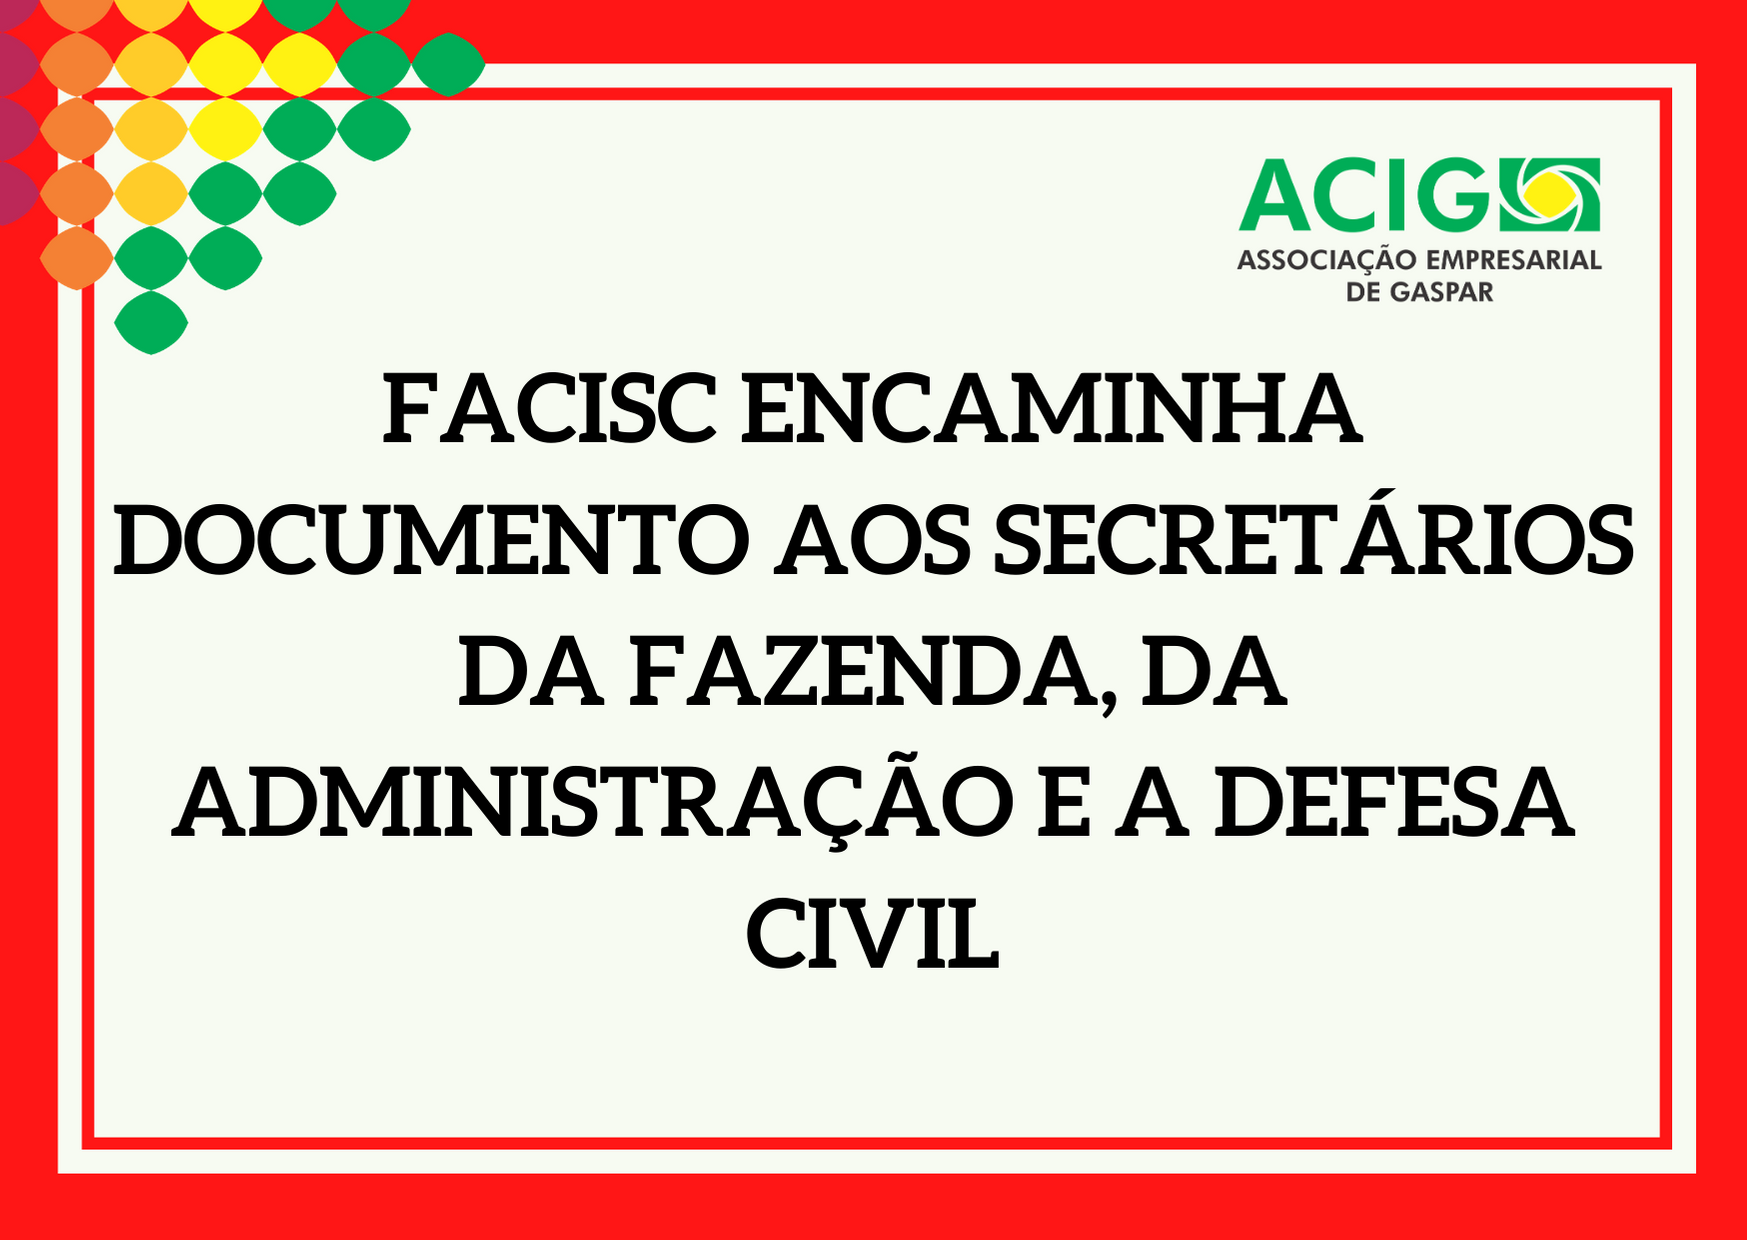 FACISC encaminha documento aos Secretários da Fazenda, da Administração e a Defesa Civil